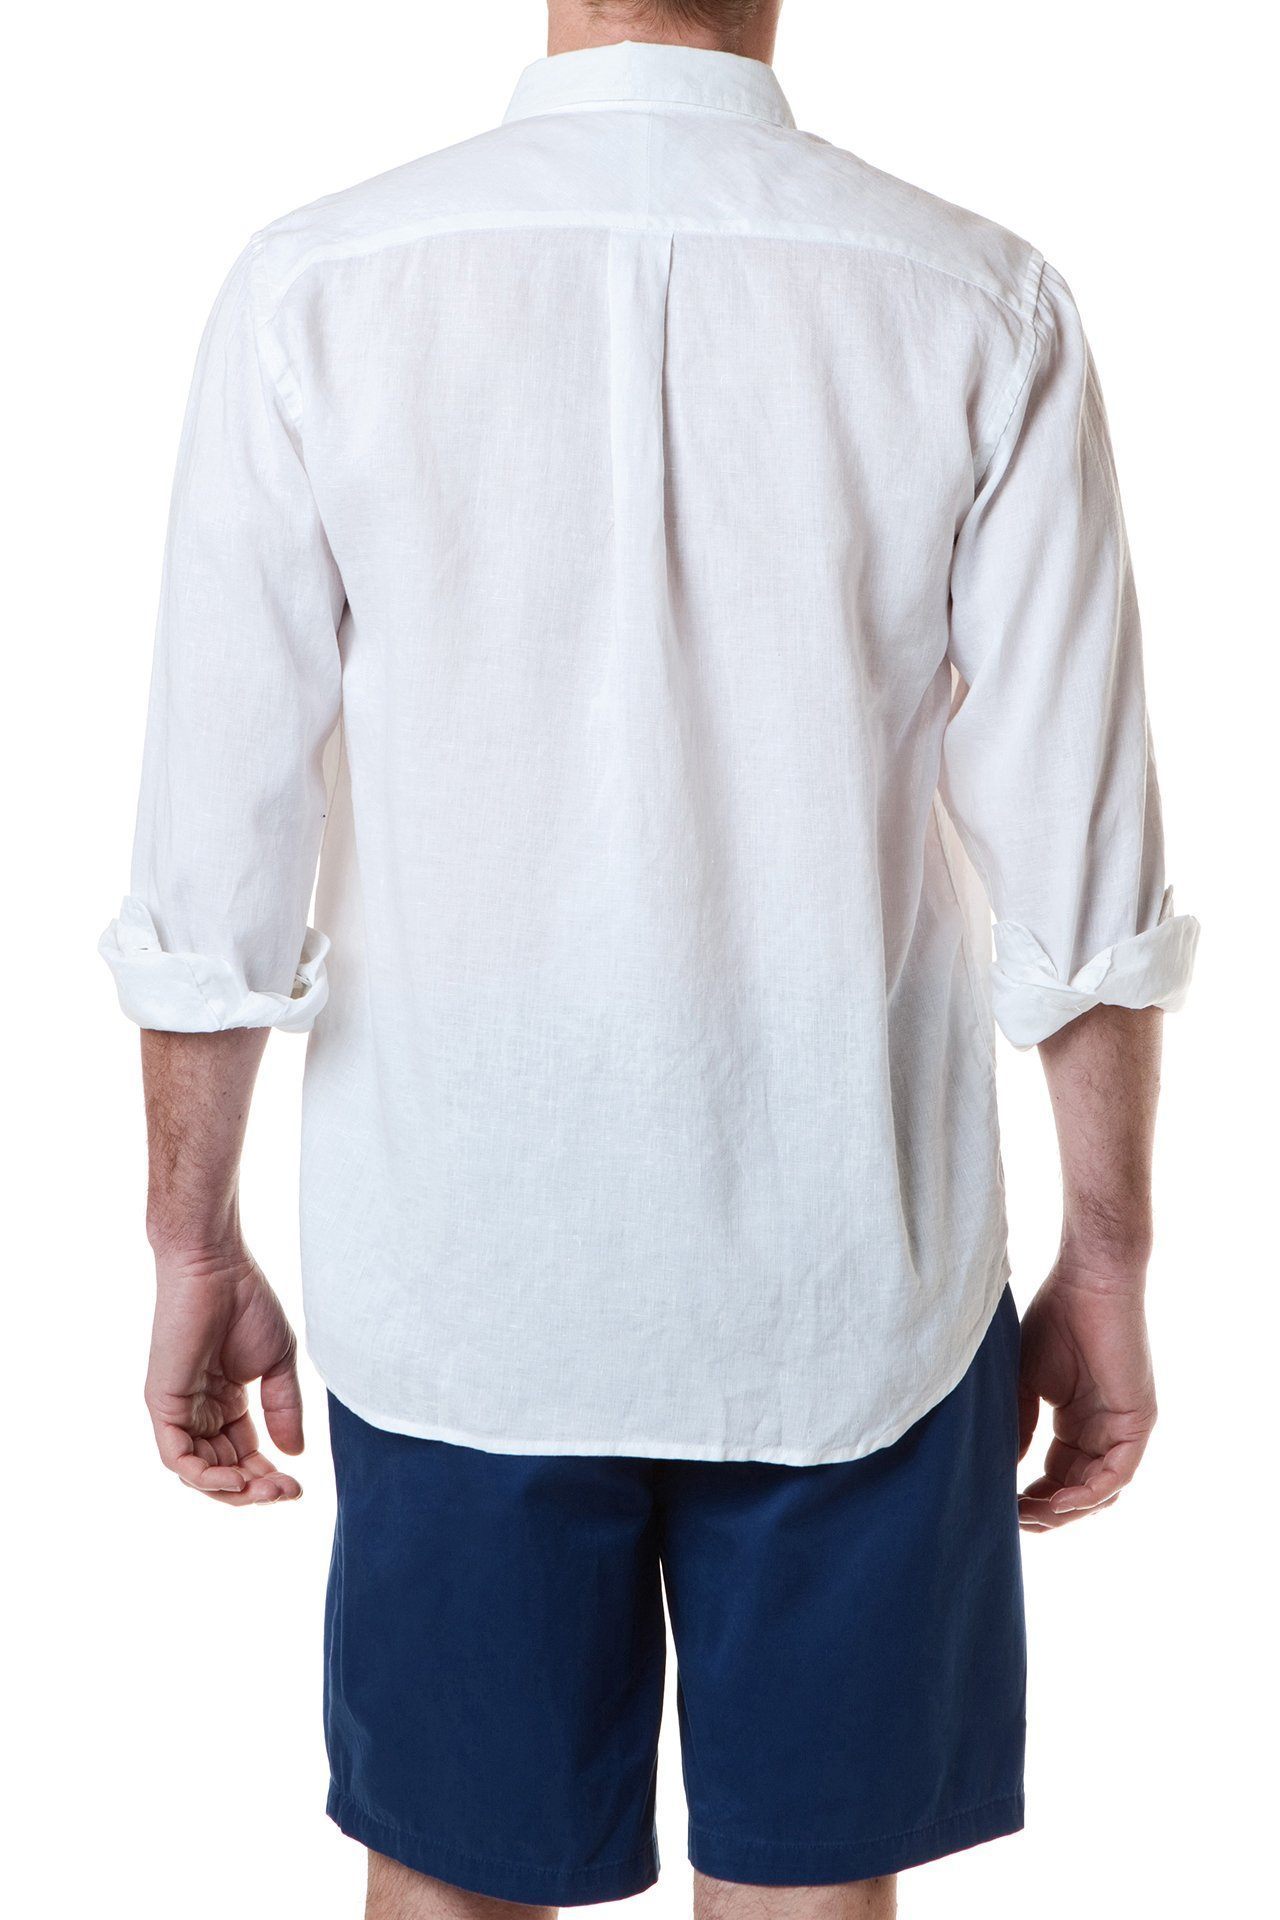 Chase Short Sleeve Shirt White Linen